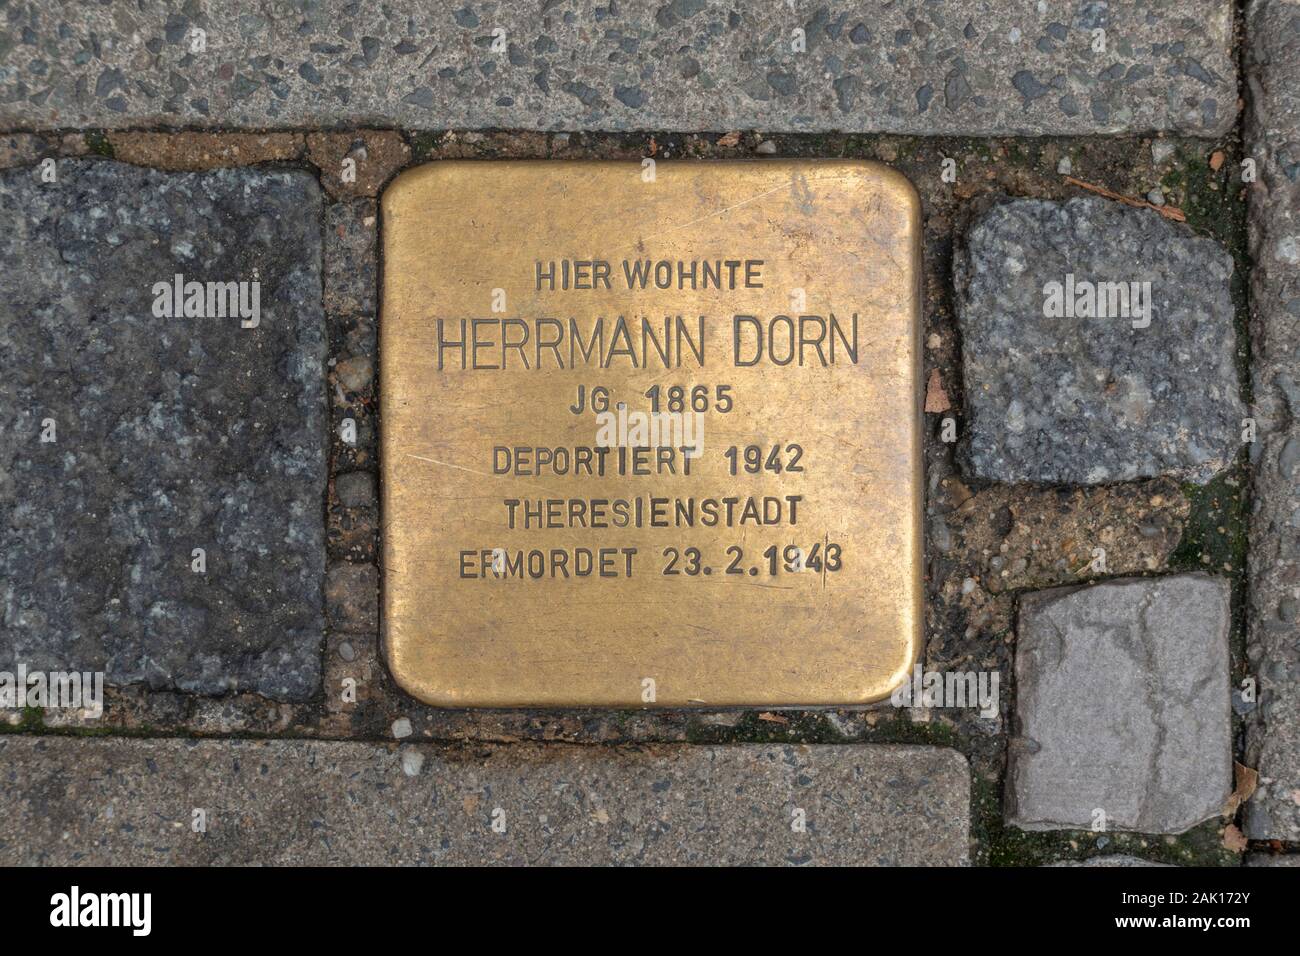 'Stumbling stones' Holocaust memorial markers for Herrmann Dorn in Coburg, Bavaria, Germany. Stock Photo